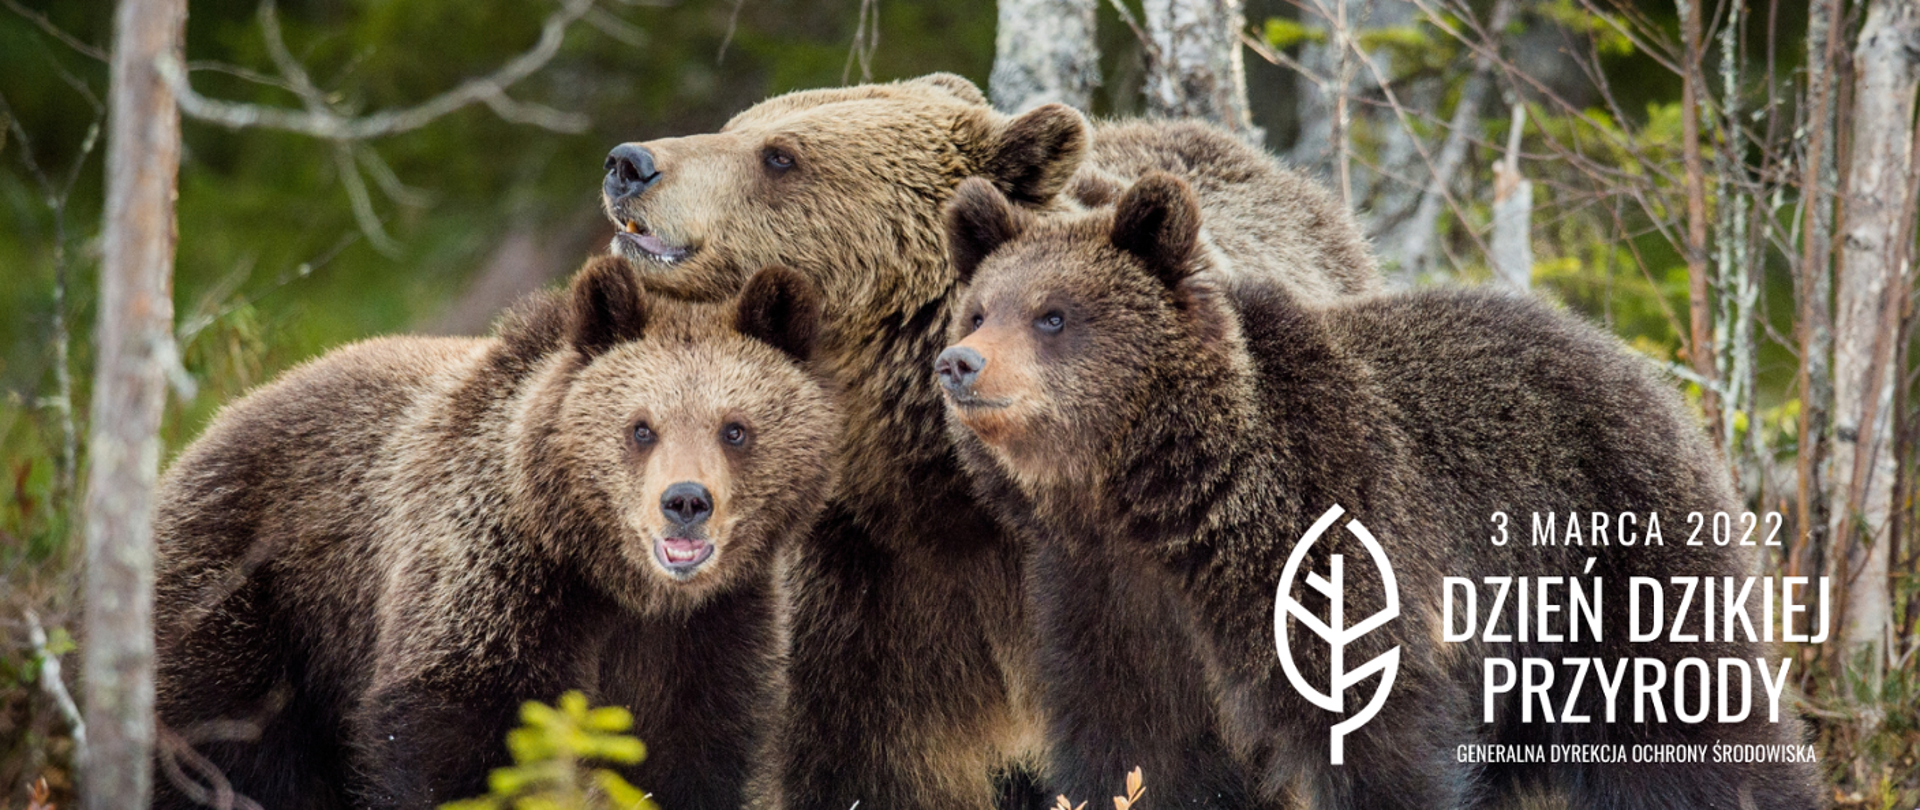 Dzień dzikiej przyrody - trzy niedźwiedzie w lesie